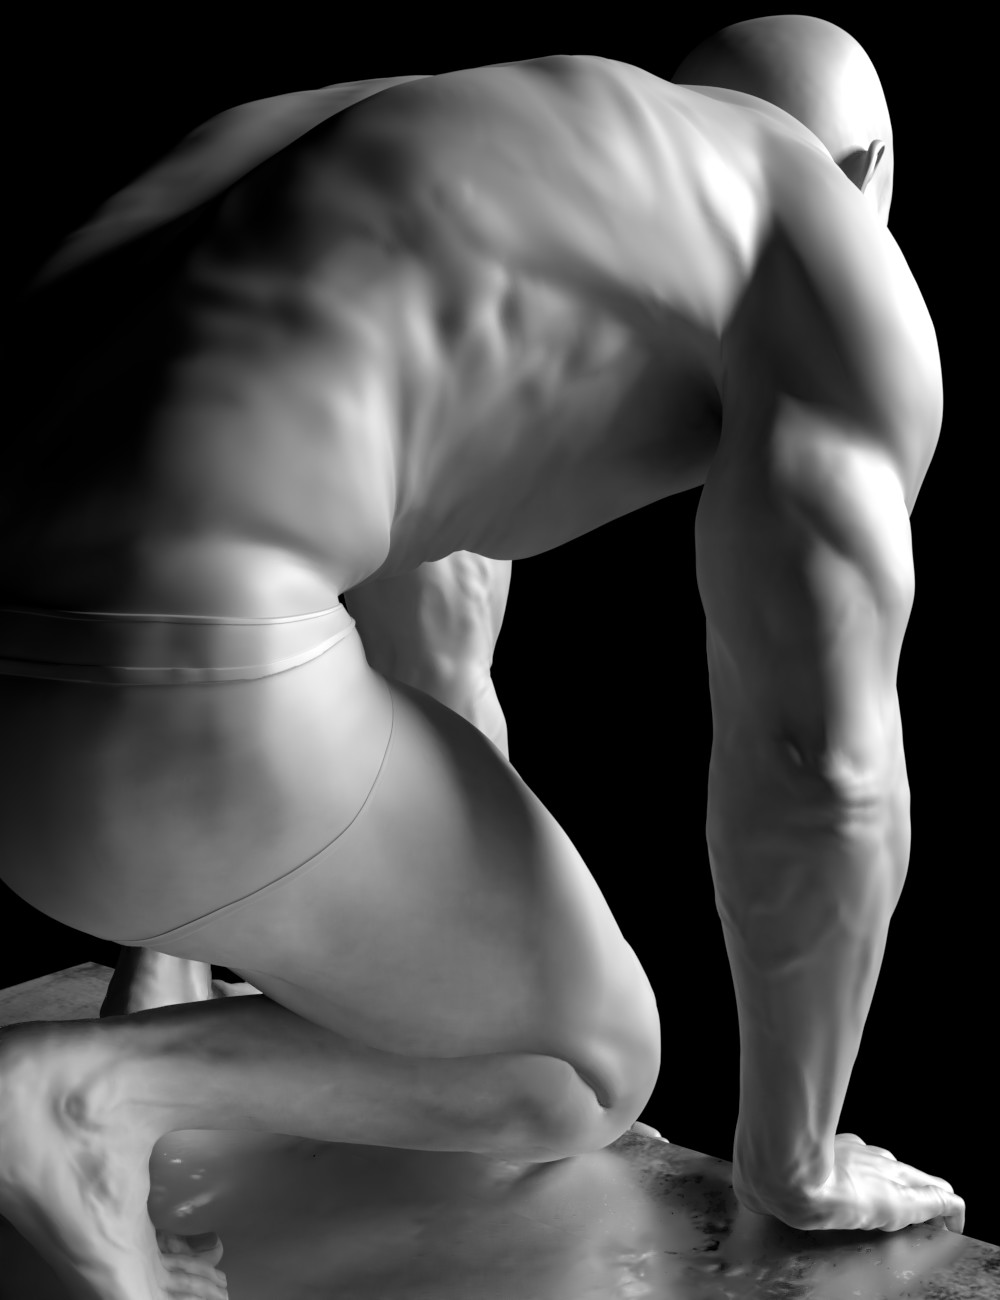 Adam HD for Genesis 8 Male by: Gravity Studios, 3D Models by Daz 3D